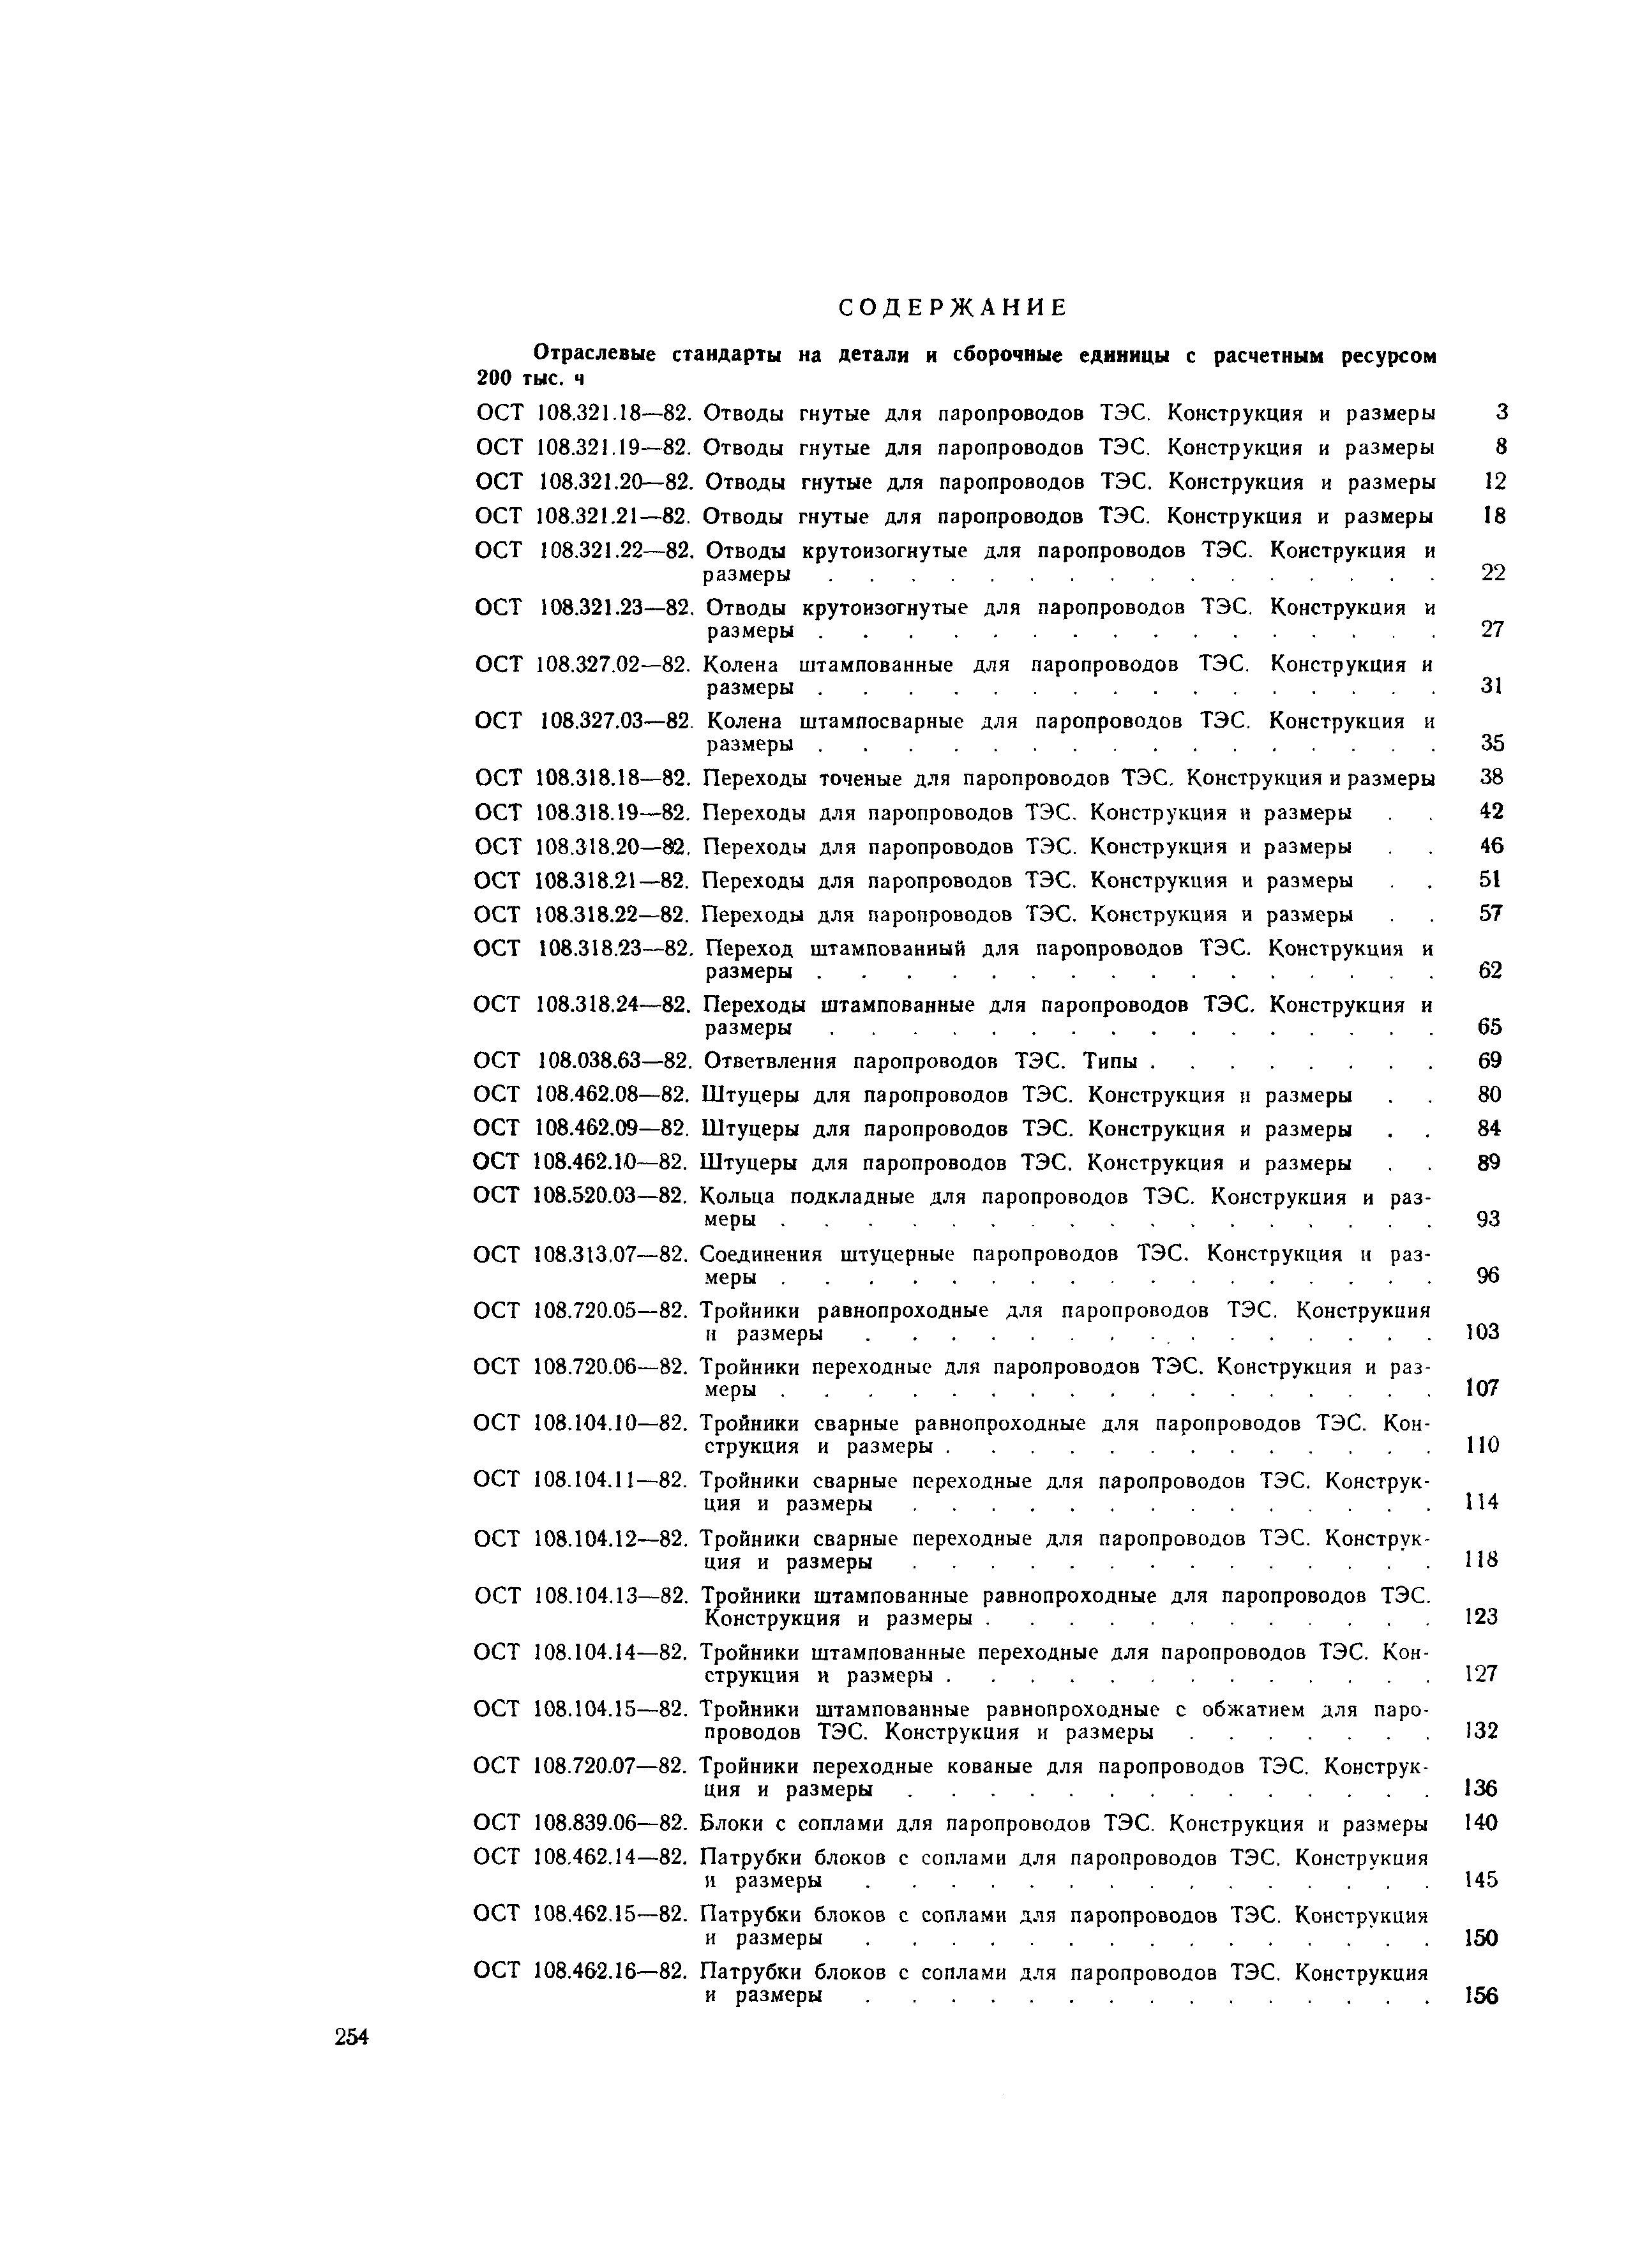 ОСТ 108.104.12-82